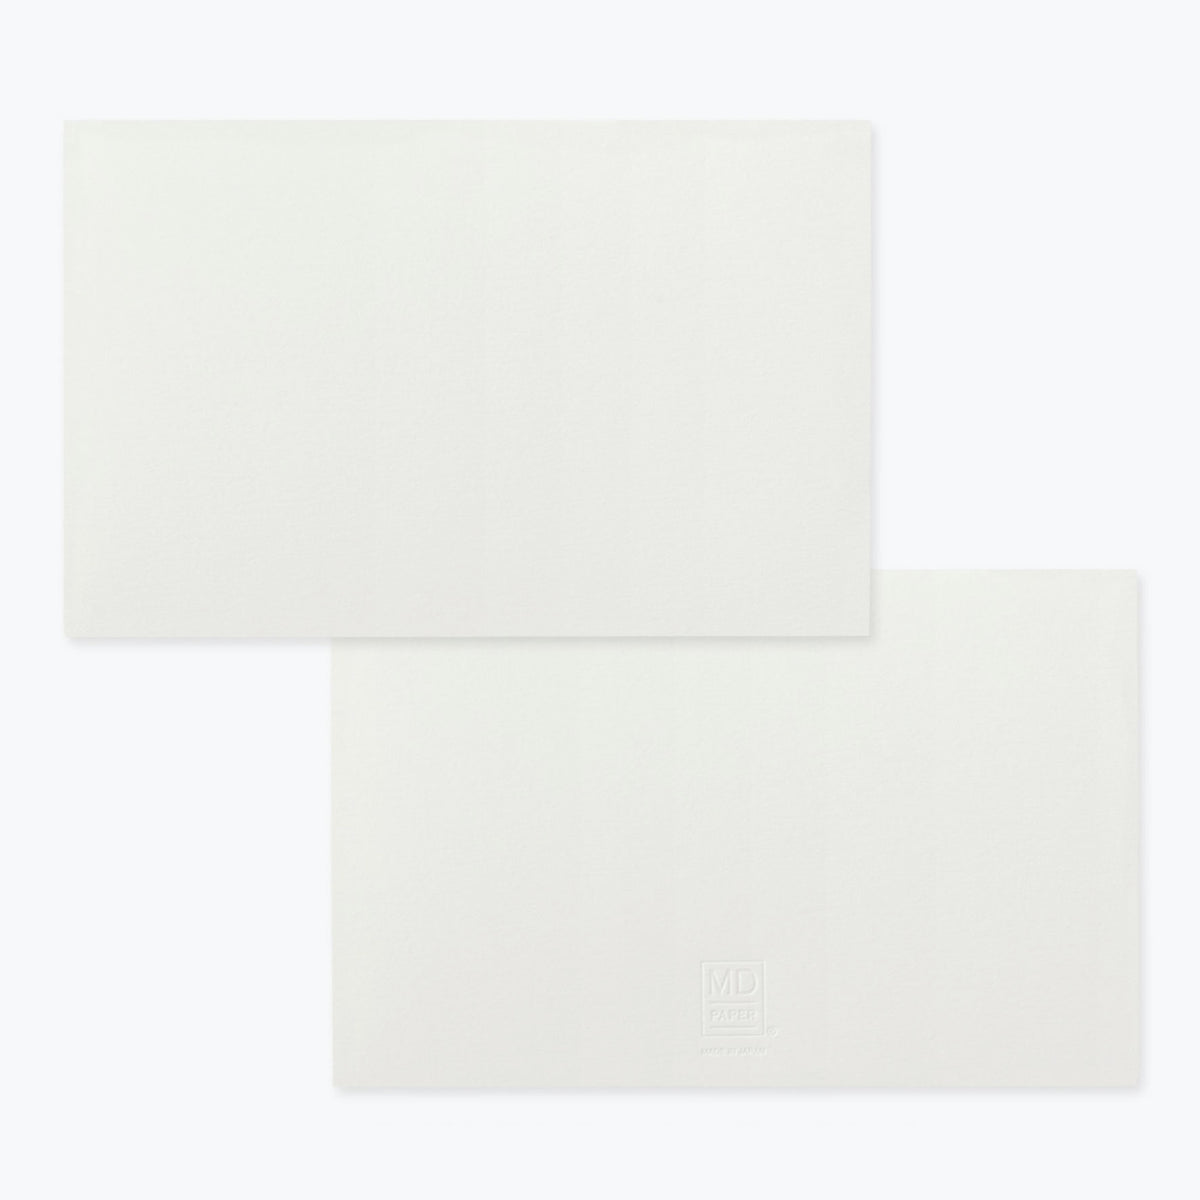 Midori - Card Set - Cotton <Outgoing>